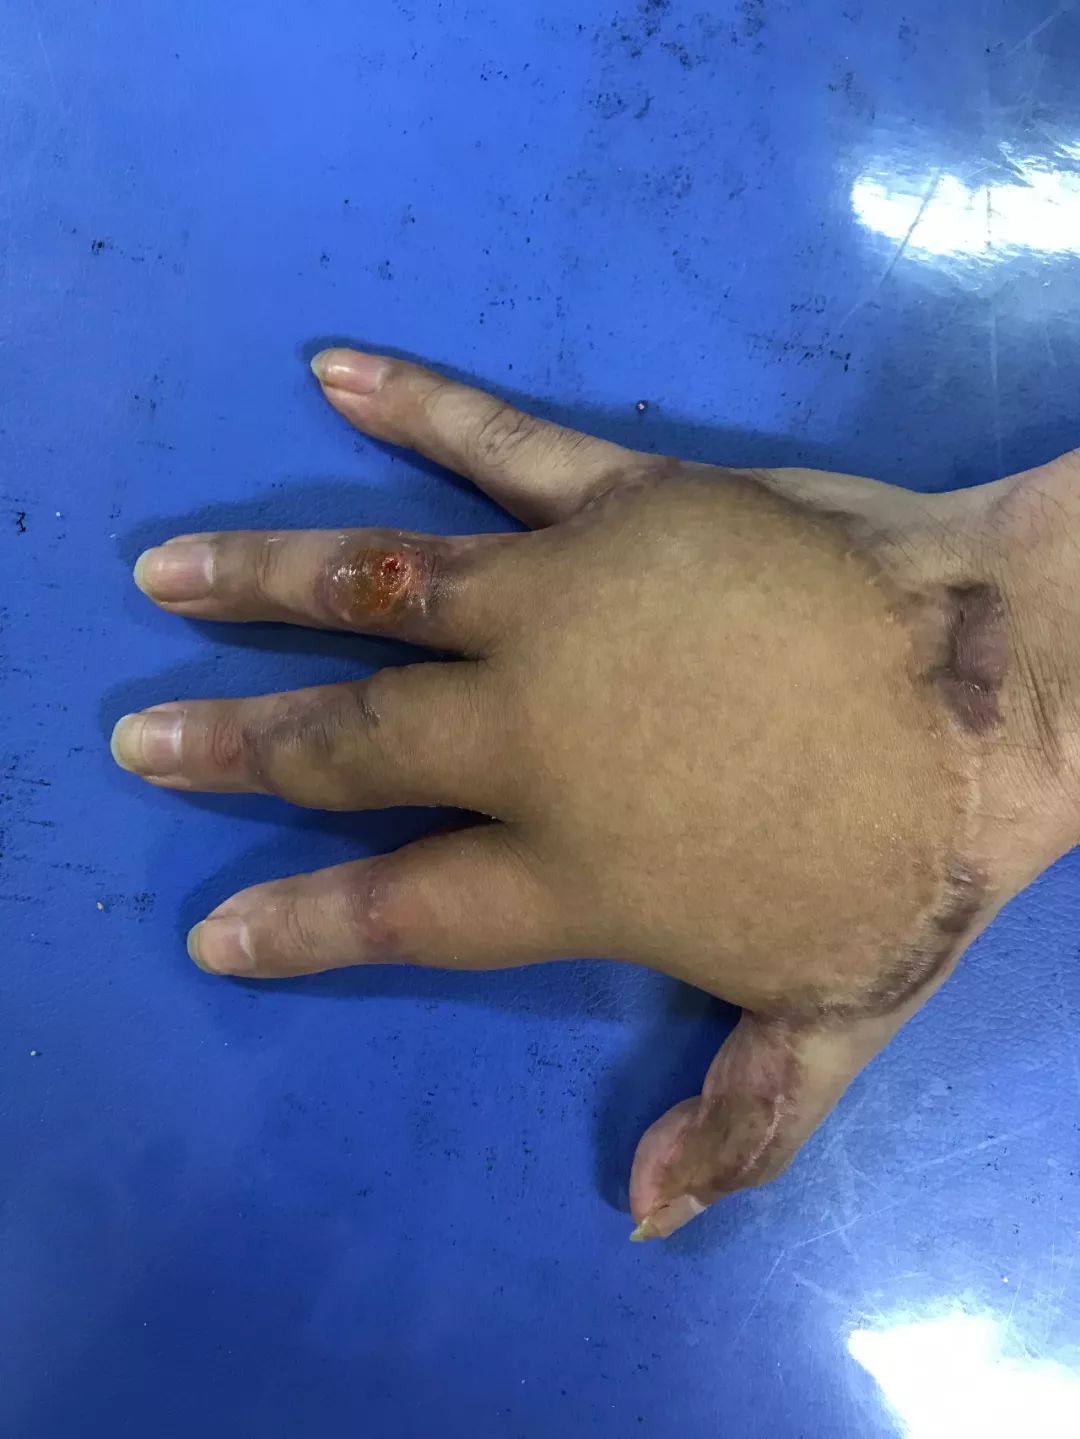 患者手掌毁损,烧伤整形二病区将全手埋腹部保功能